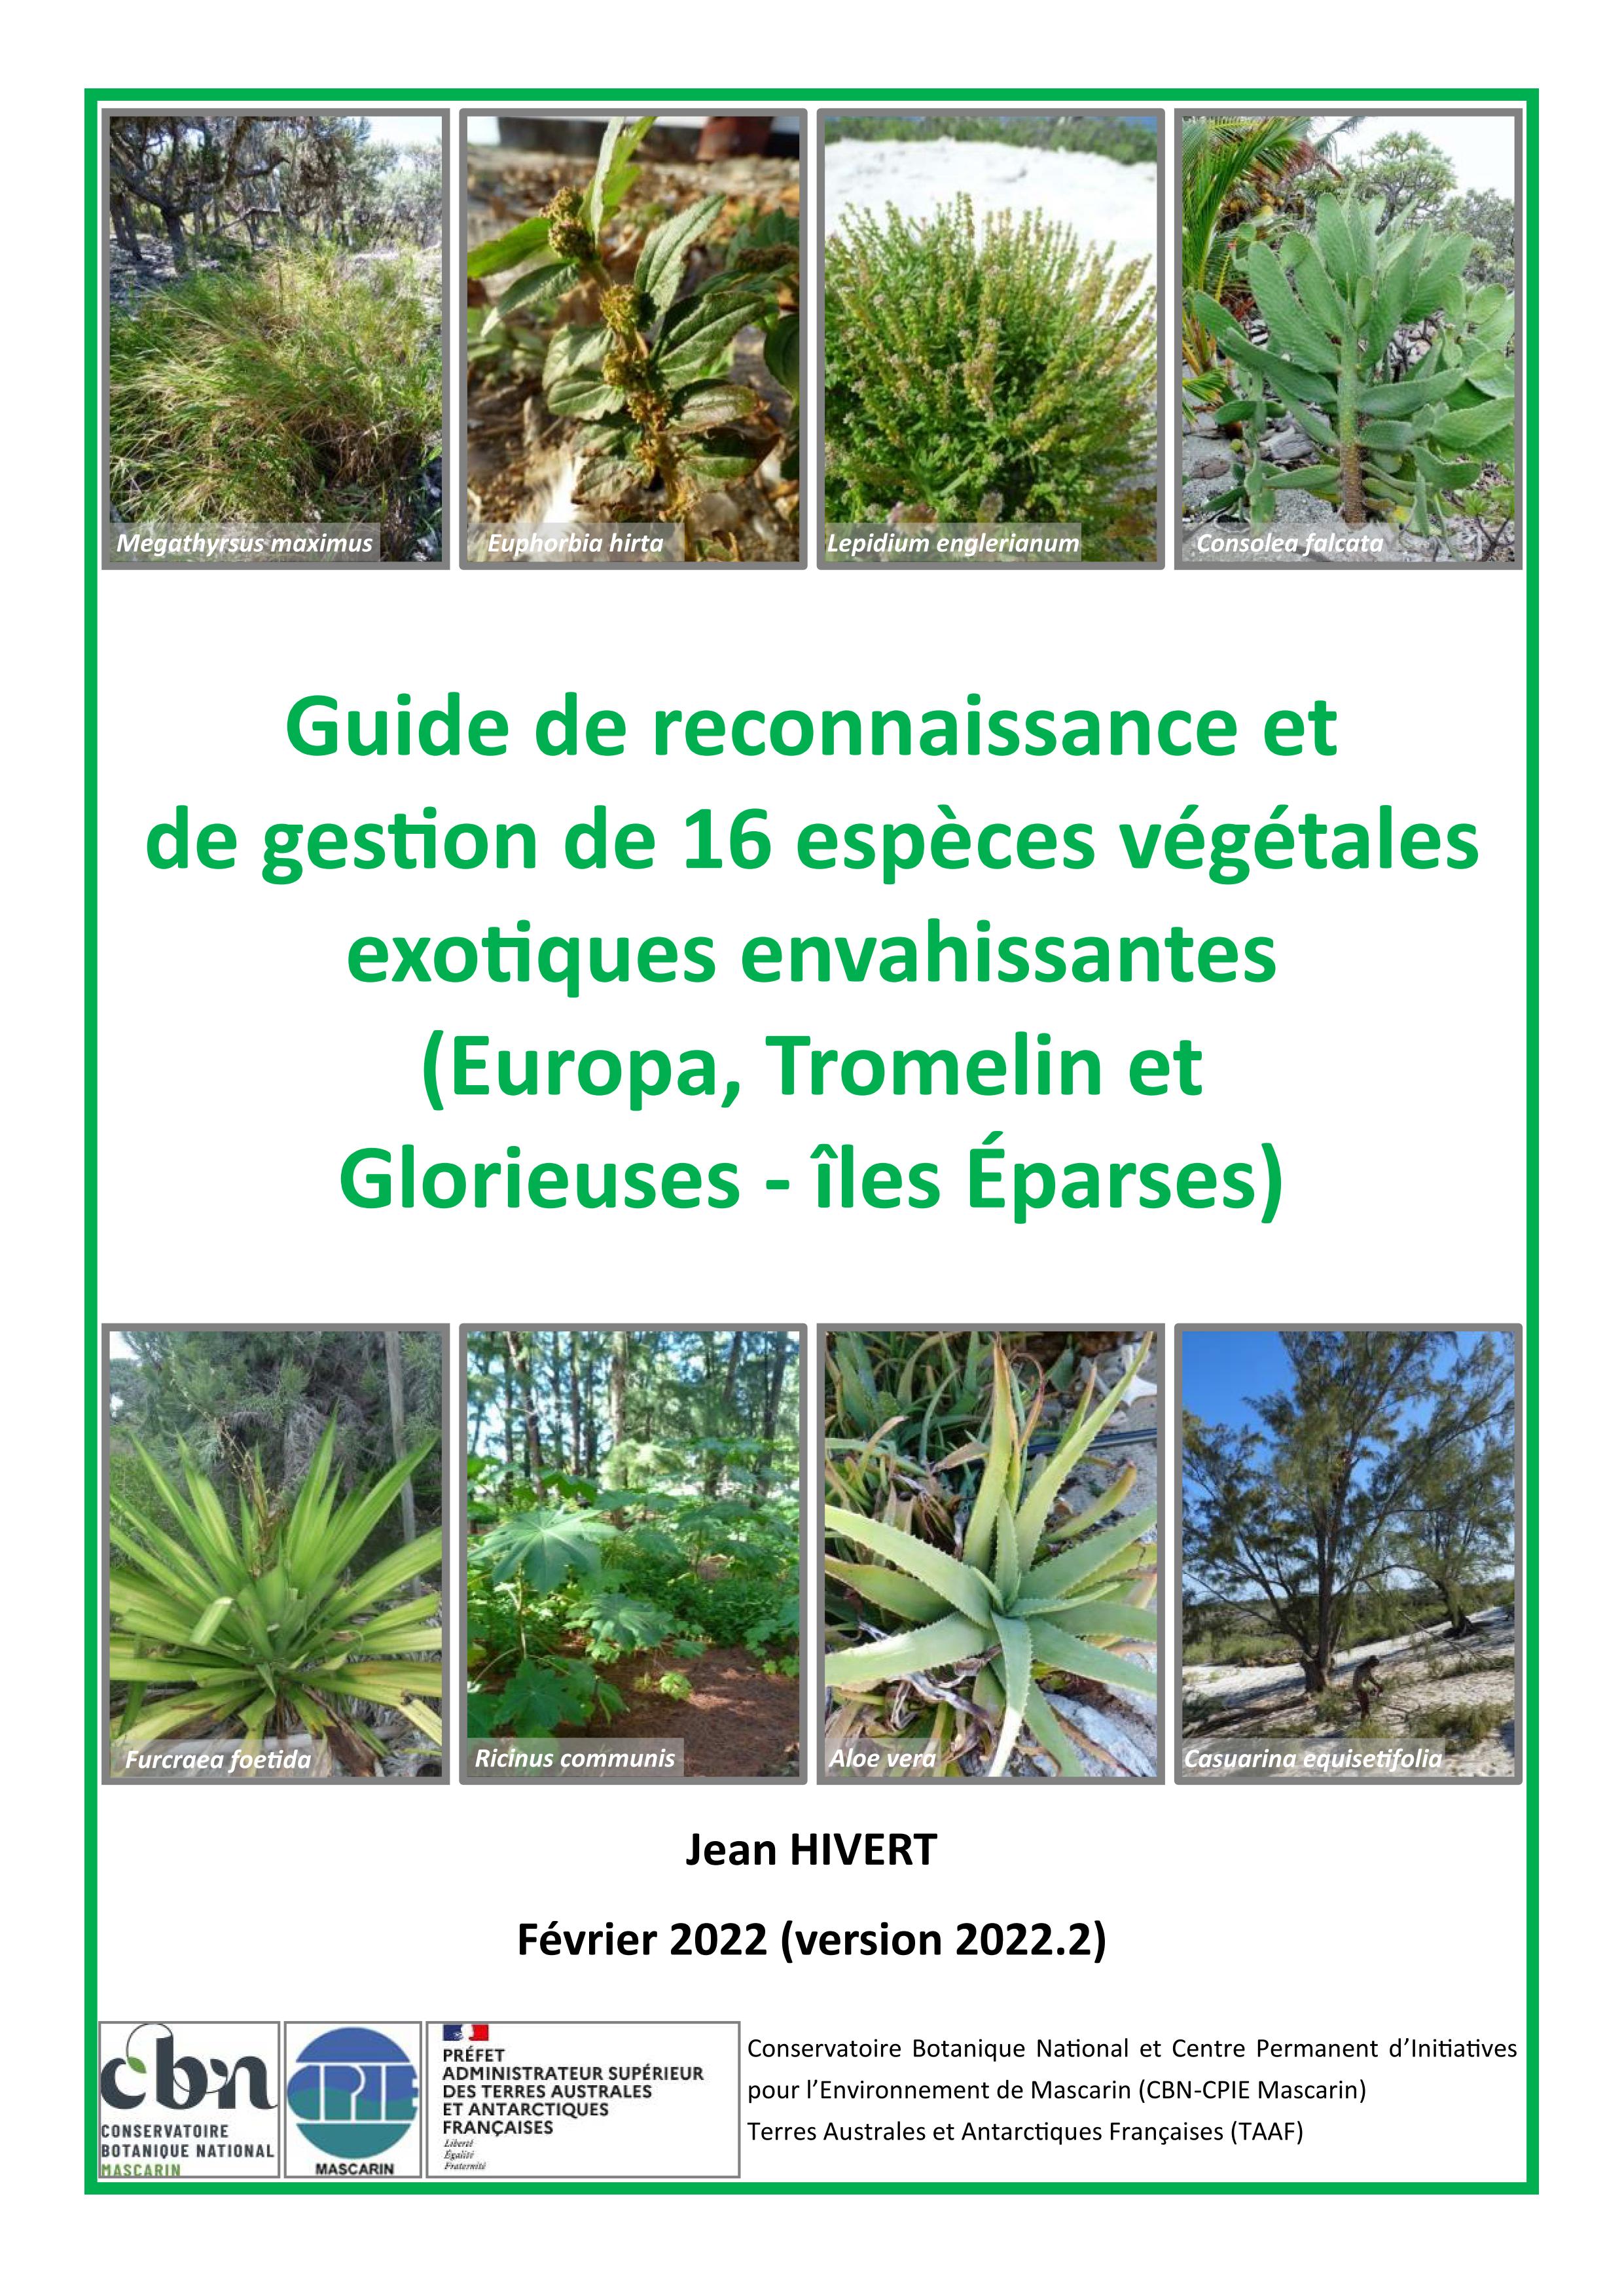 Mise à jour du guide sur 16 espèces végétales exotiques envahissantes sur Europa, Tromelin et Glorieuses